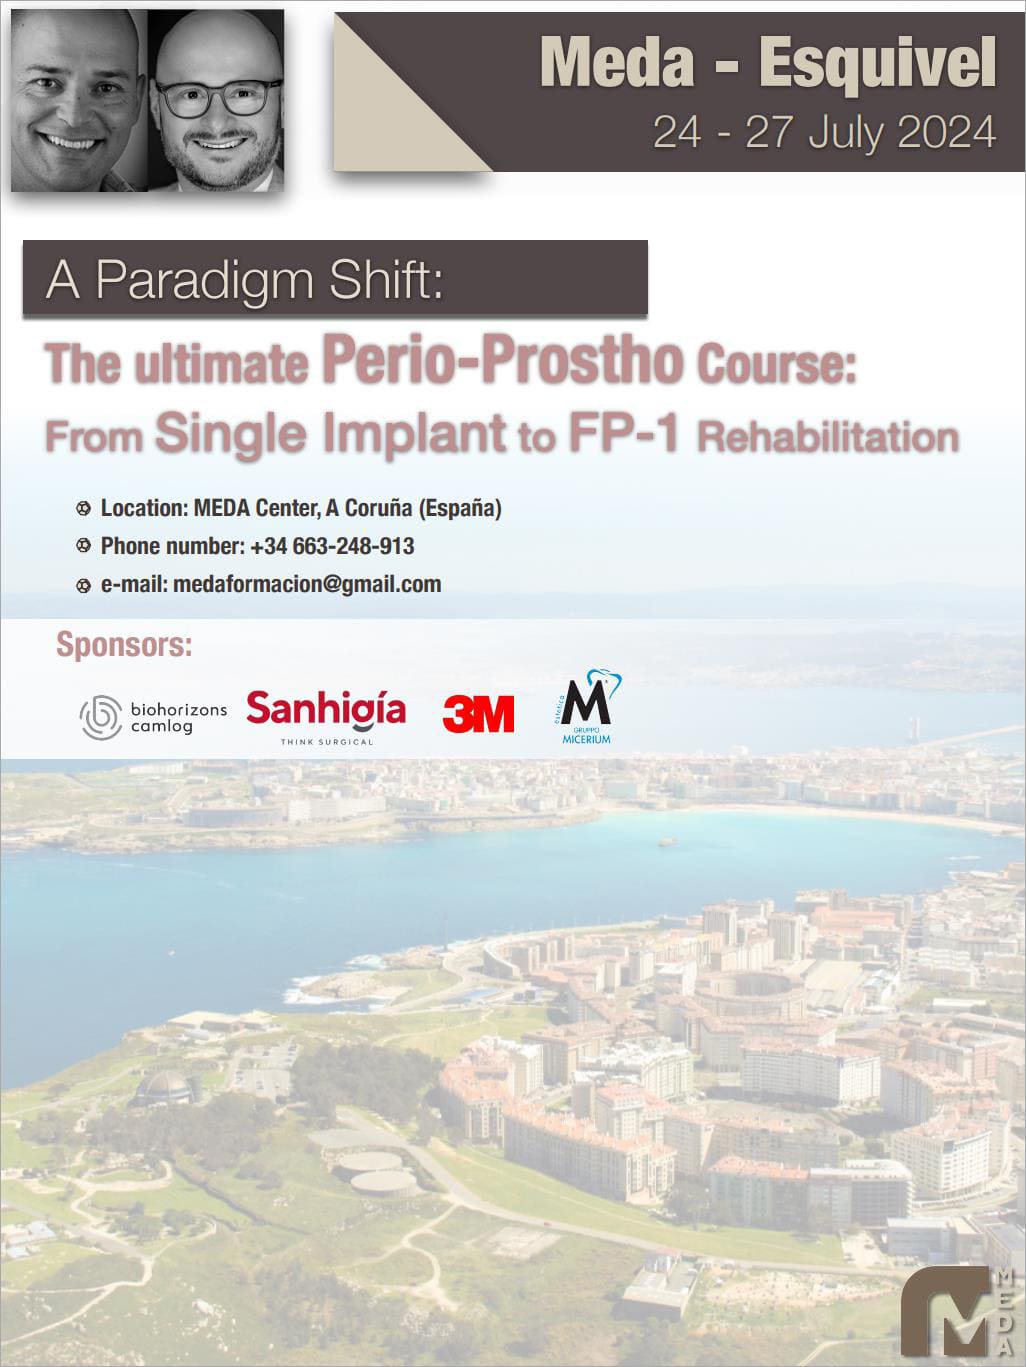 Definitive Perio-Prosto Course at Meda Dental Academy